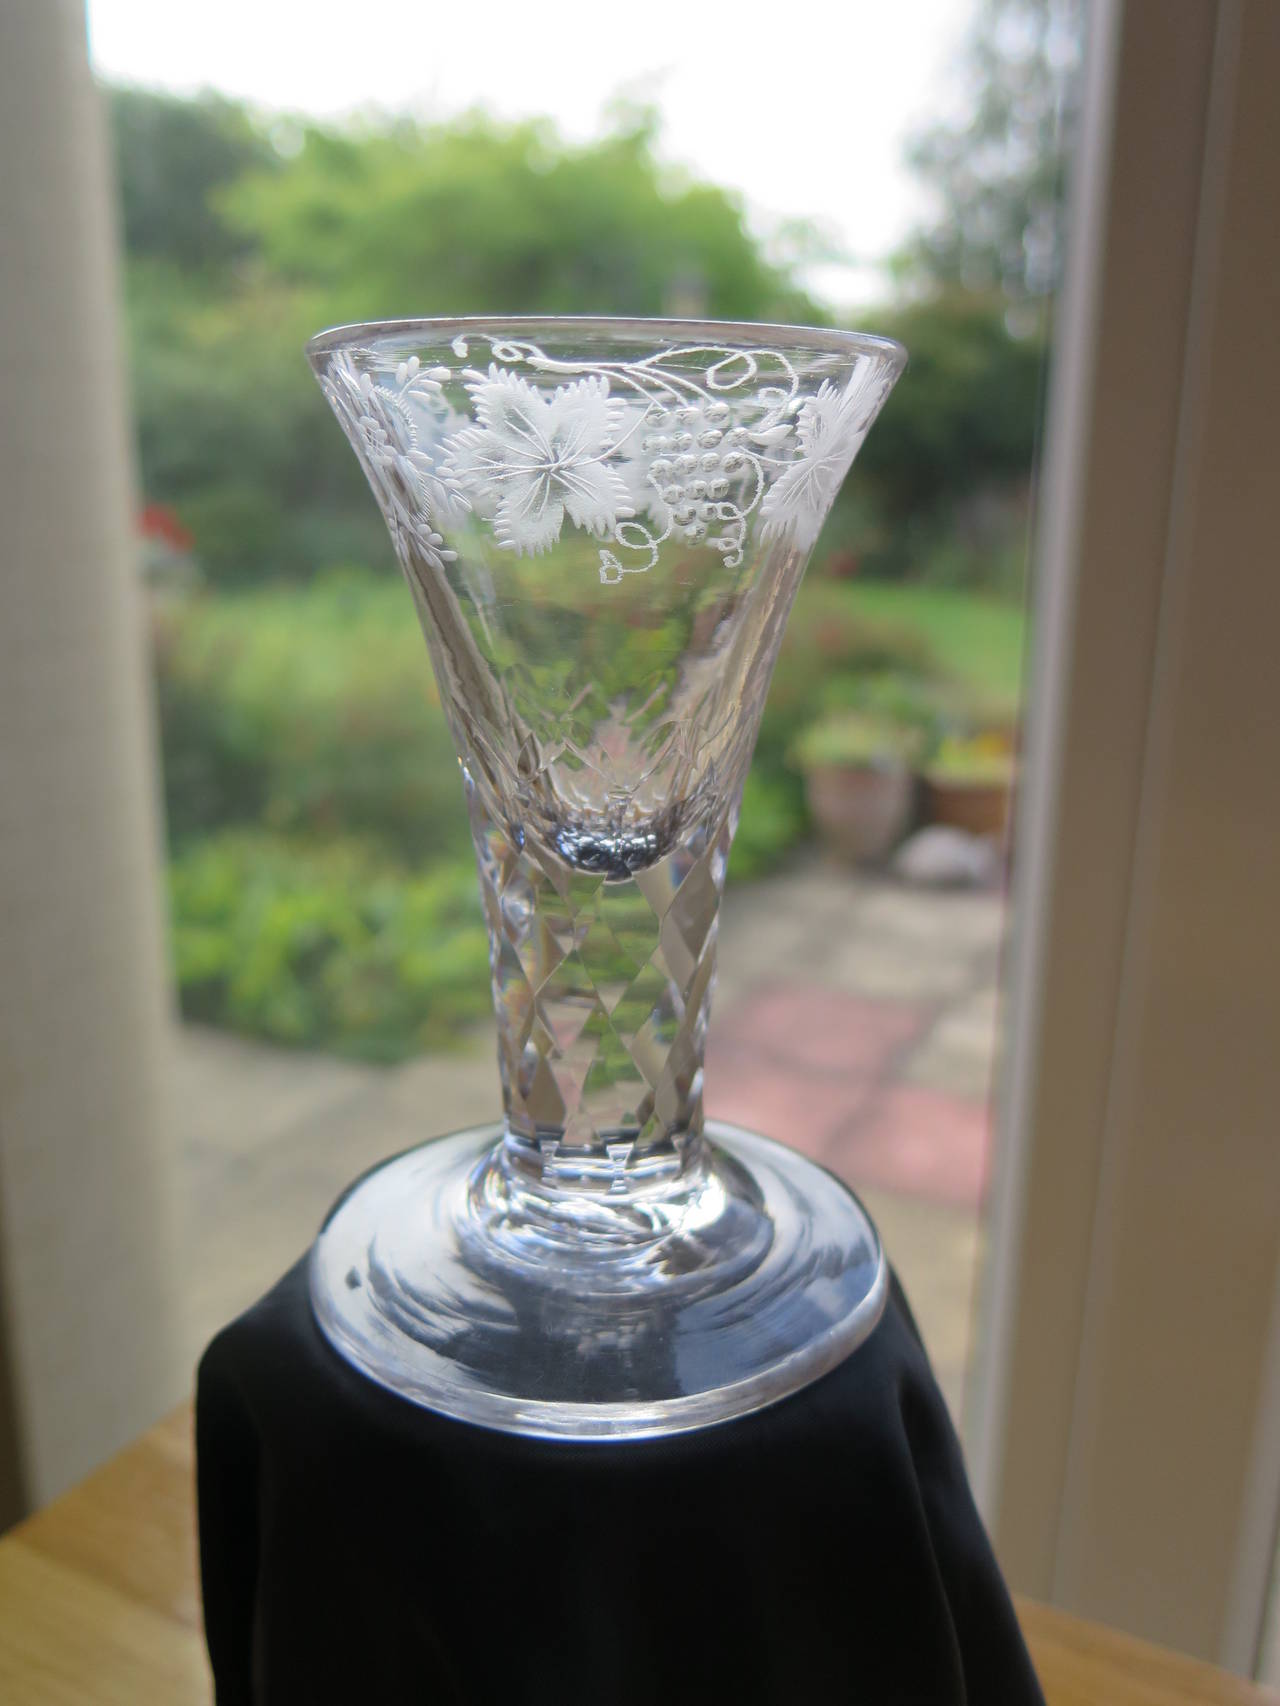 Dies ist ein feines englisches, mundgeblasenes Trinkglas, hergestellt aus Bleiglas im 18. Jahrhundert, um 1785.

Kurze, schwere, dickstielige Gläser wie dieses mit einem dicken Fuß werden als Brenngläser bezeichnet, da sie für Trinksprüche bei